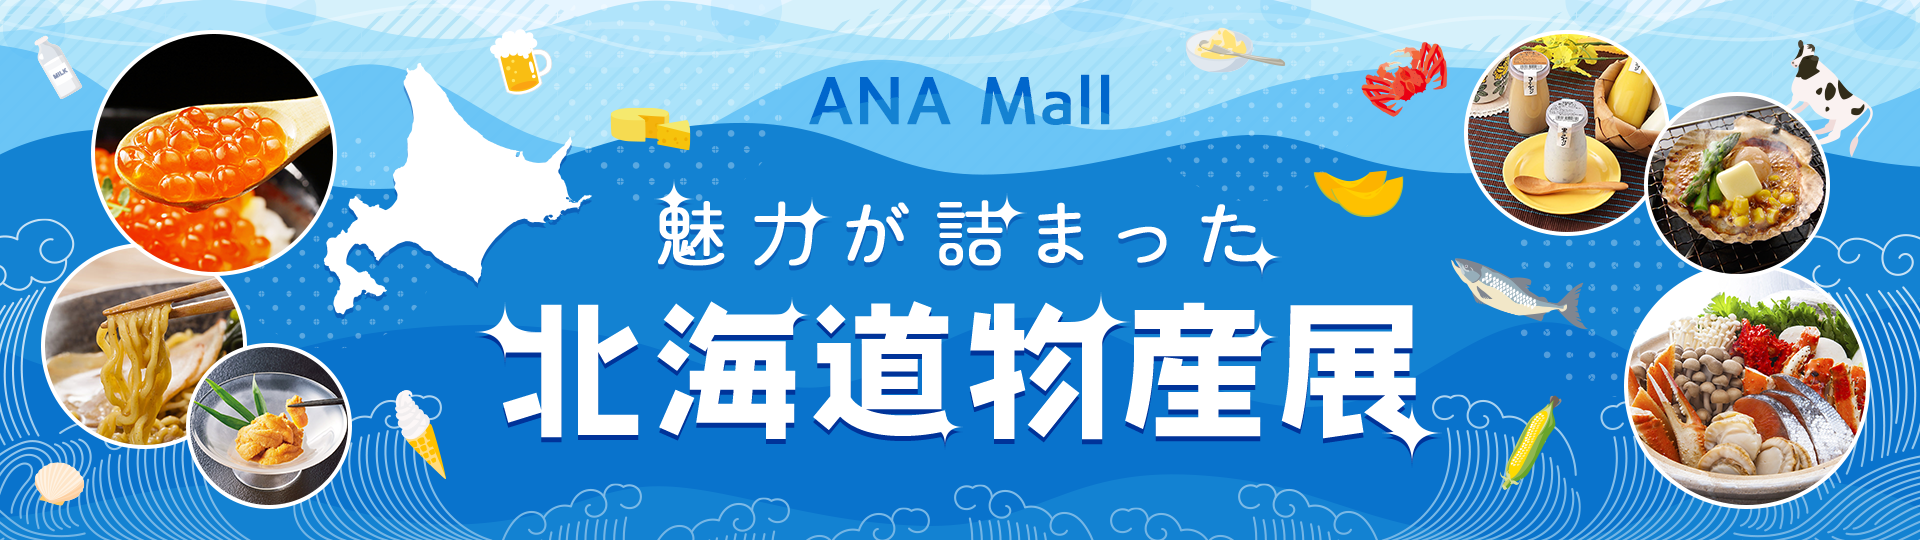 ANA Mall 魅力が詰まった北海道物産展